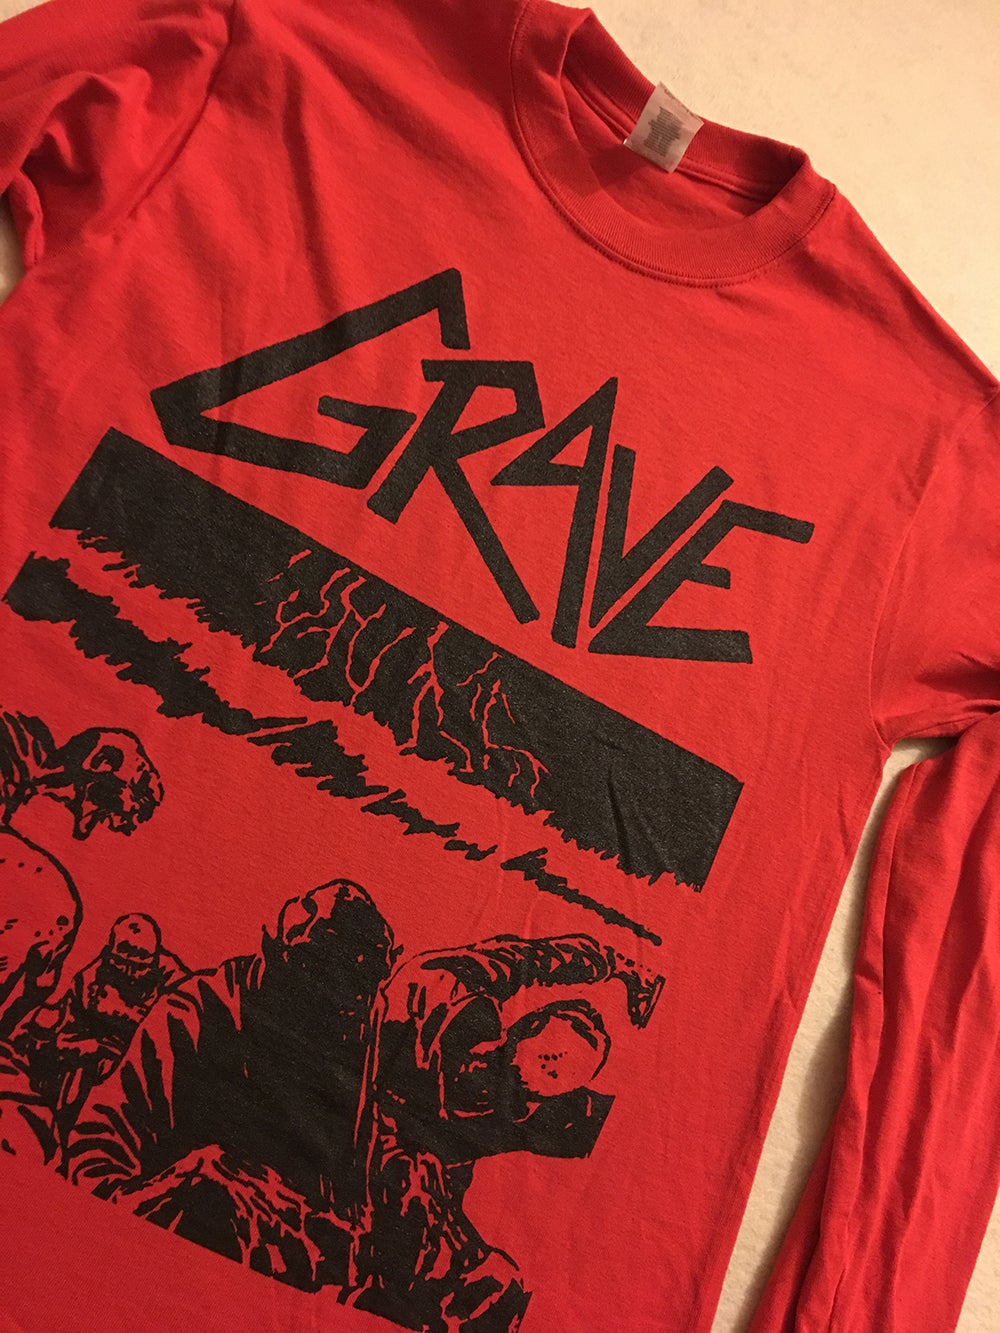 Grave " Sick Disgust Eternal " Red Long Sleeve T shirt